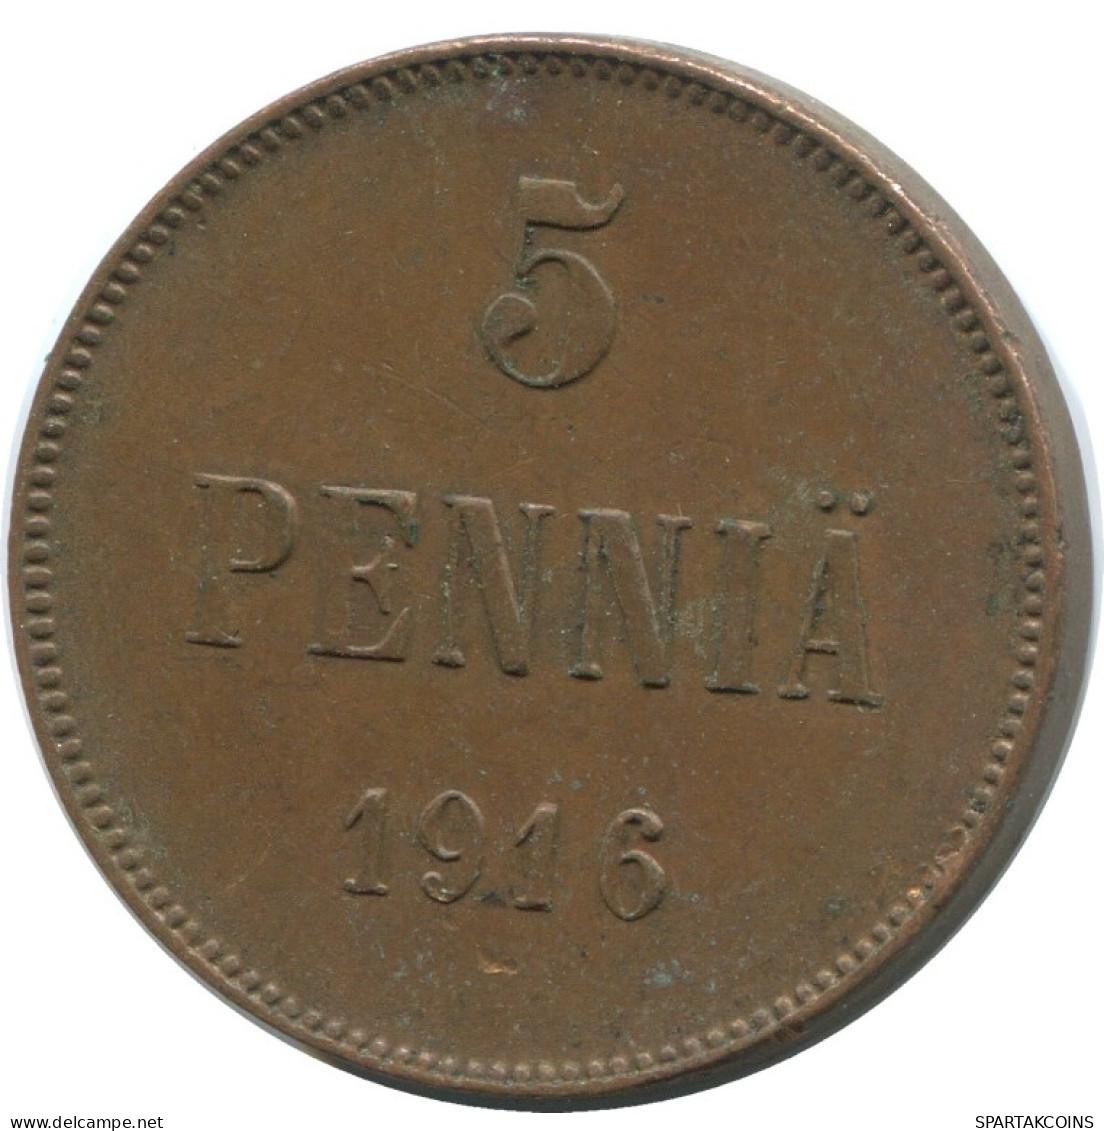 5 PENNIA 1916 FINLAND Coin RUSSIA EMPIRE #AB174.5.U.A - Finland